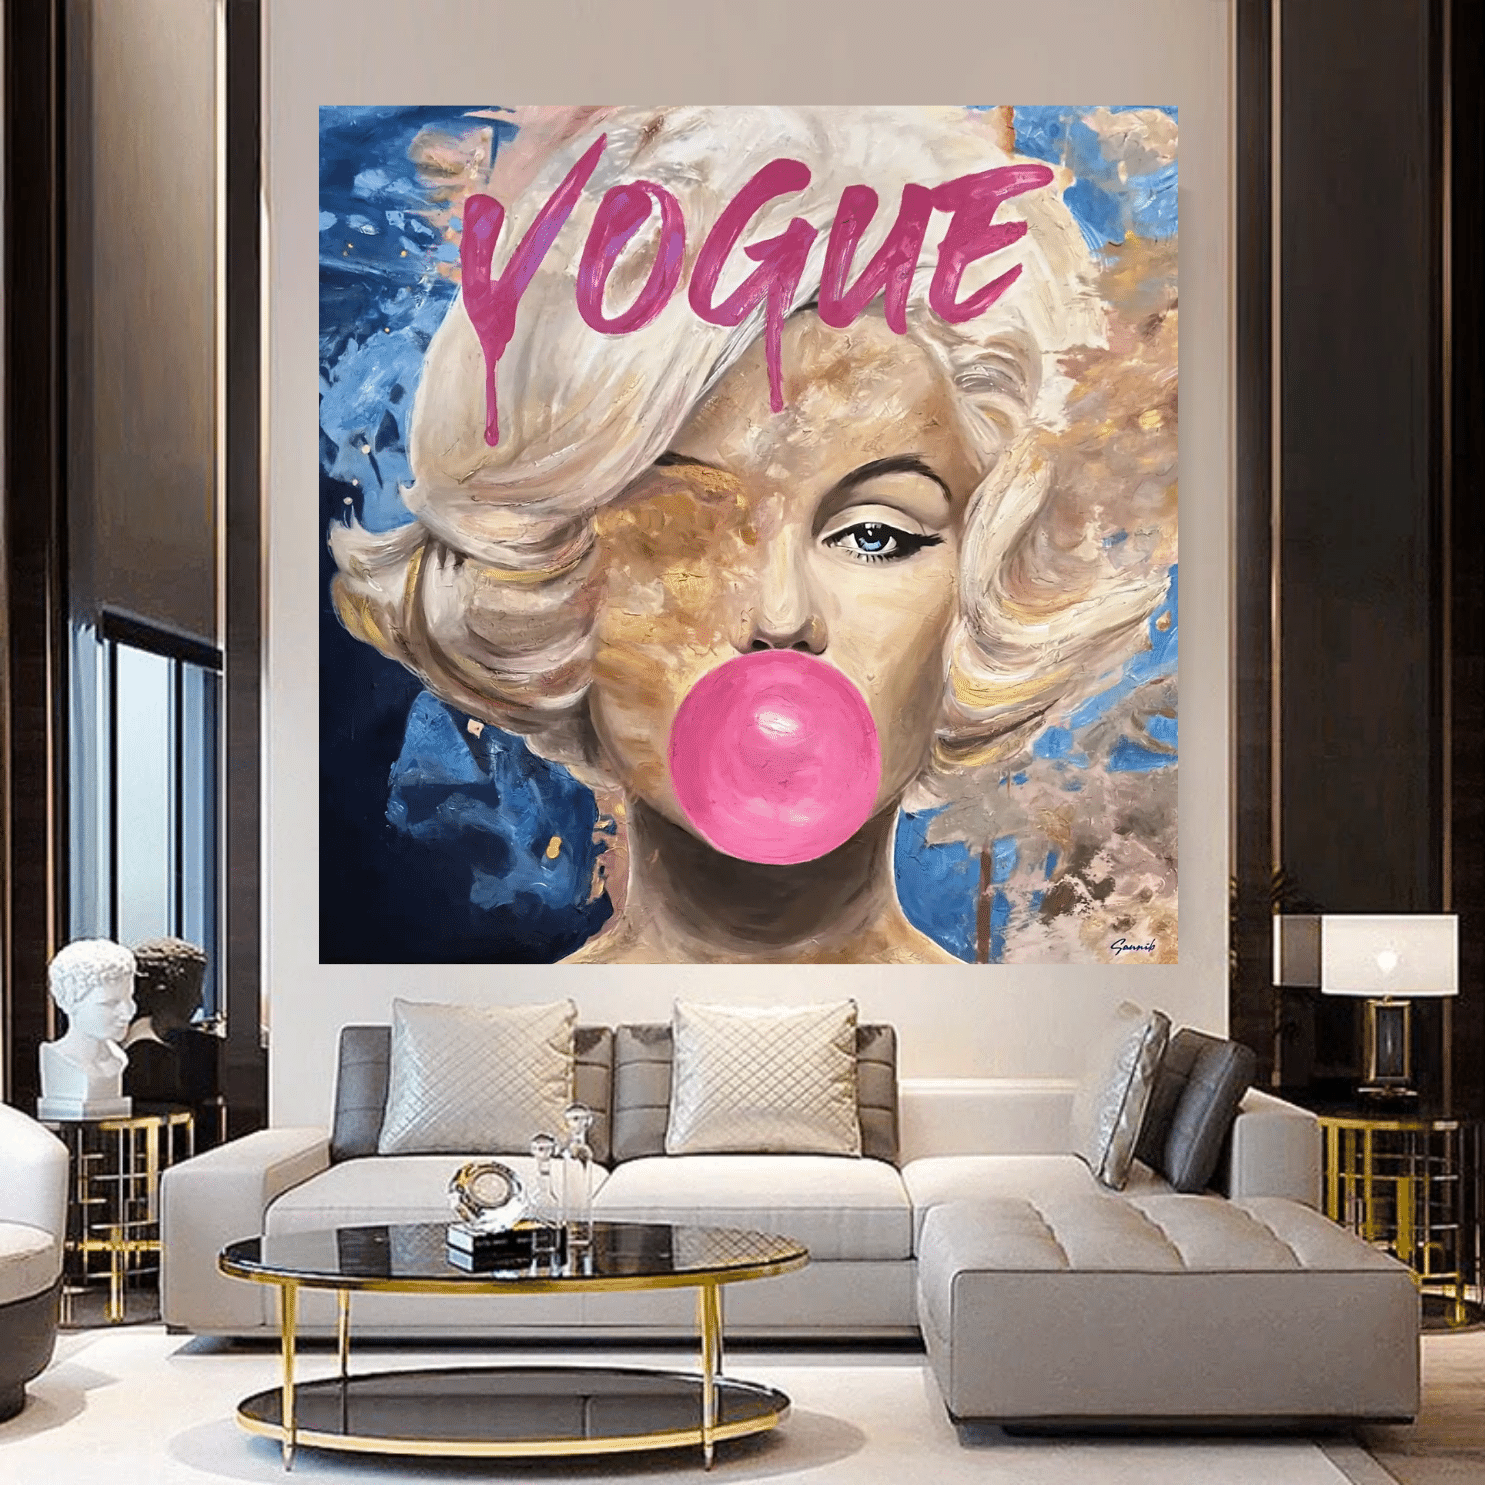 Marilyn Vogue Bubble Wall Art - Exquisite Décor